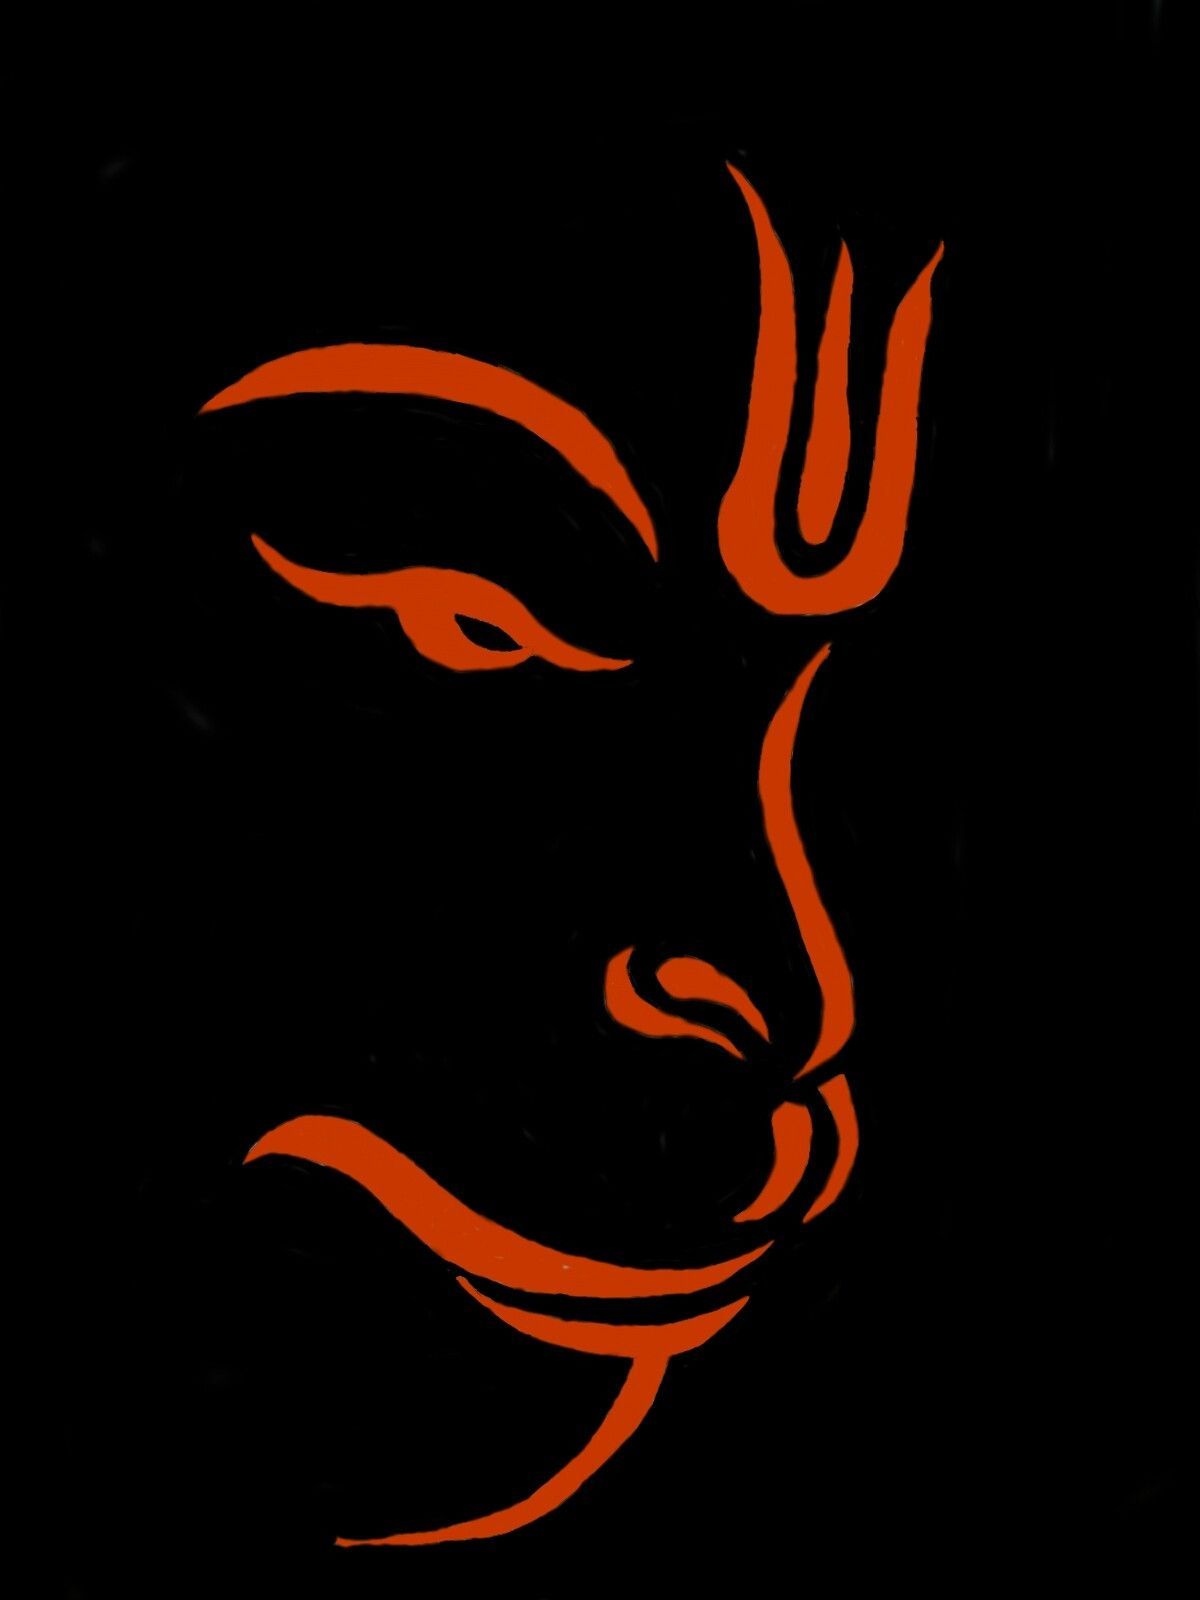 Hanuman - poster image